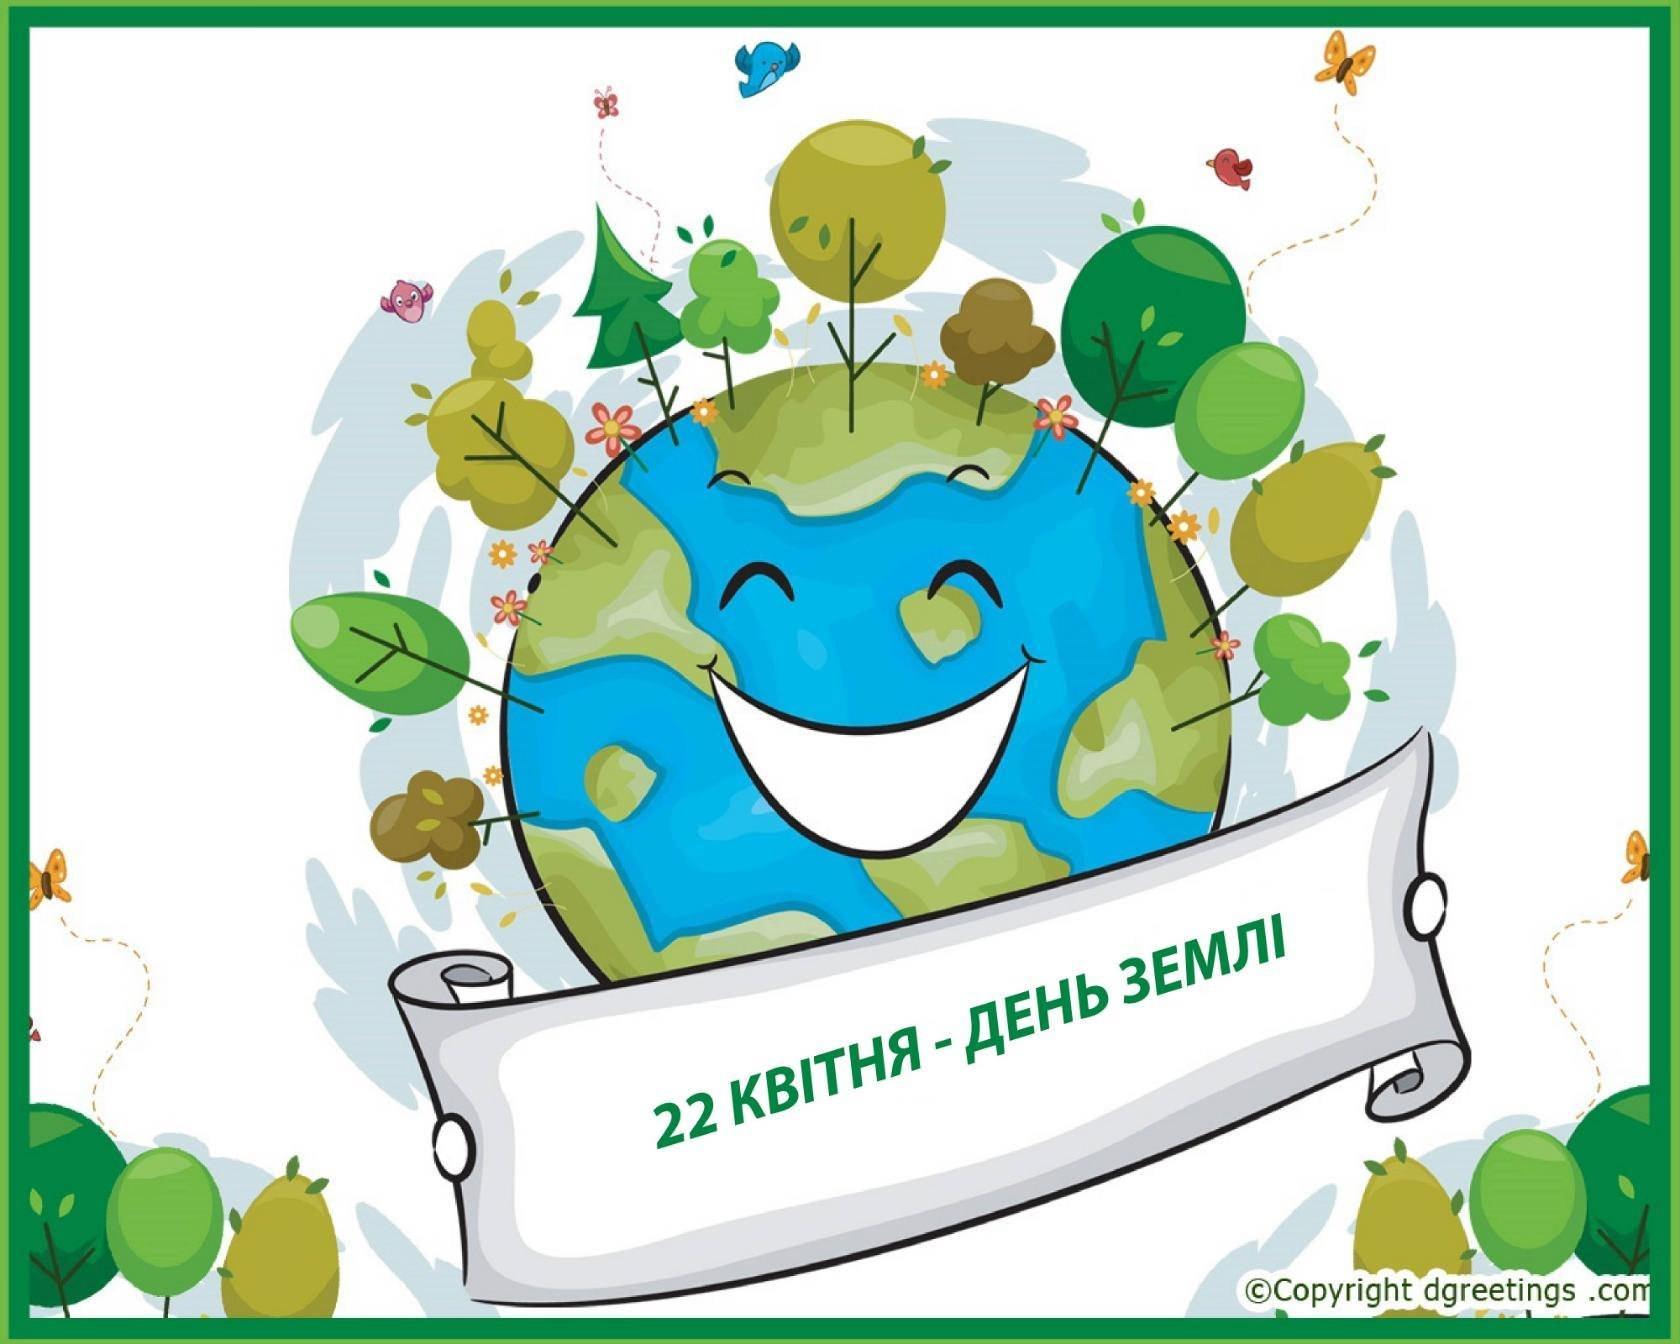 22 апреля есть праздник. День земли. Всемирный день земли. Иллюстрации ко Дню земли. День земли картинки.